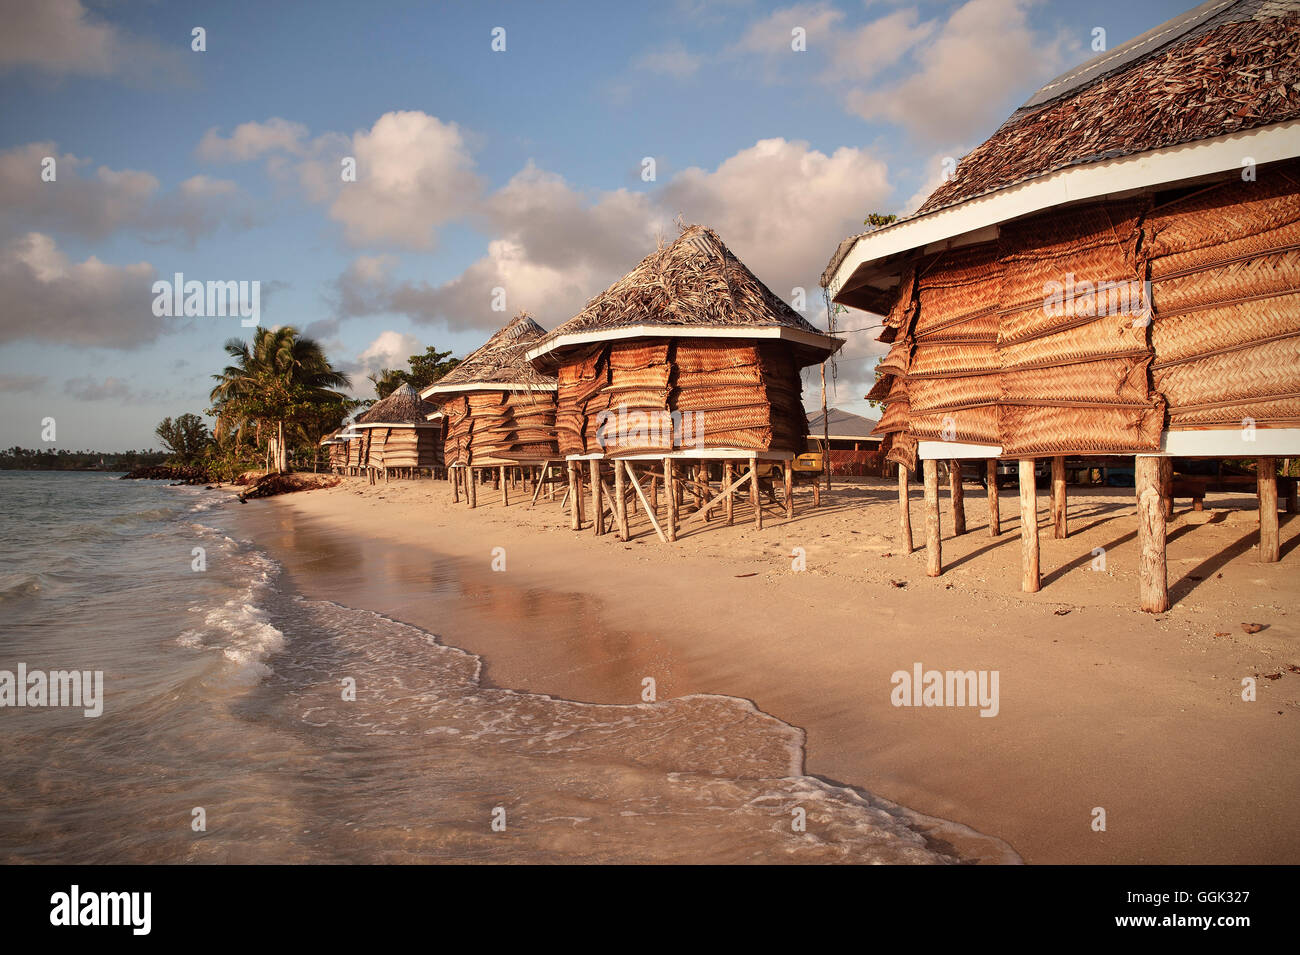 Fale, tipica casa di Samoa come alloggio turistico sulla spiaggia di Savai'i, Samoa Occidentale, Meridionale Isole del Pacifico Foto Stock